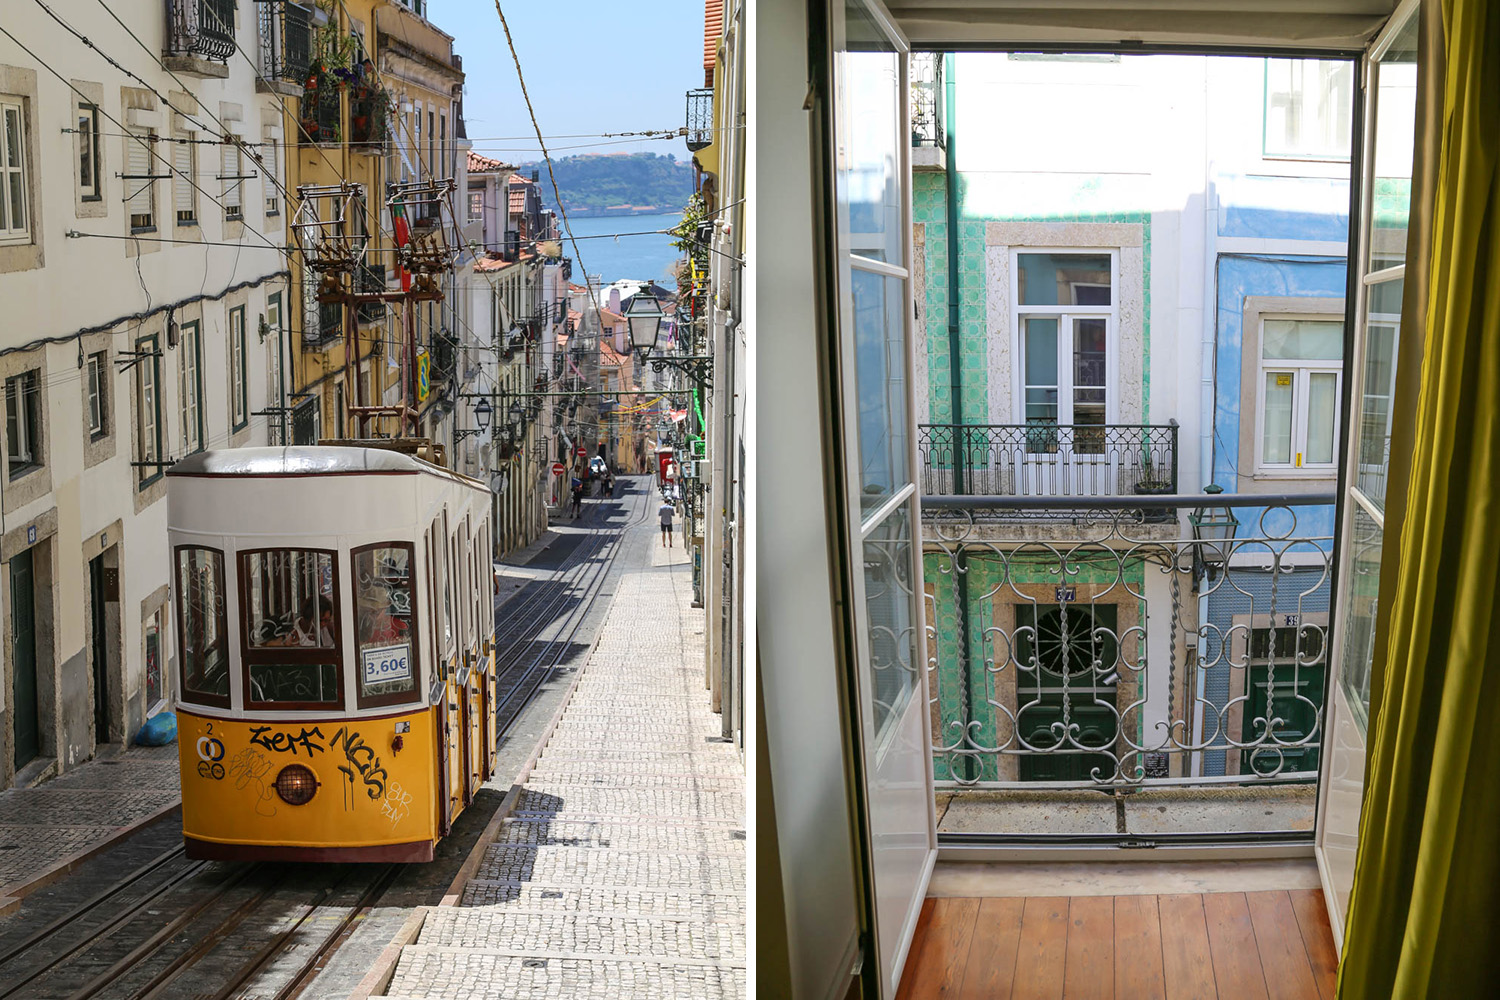 Lissabonin täydellinen Airbnb-koti